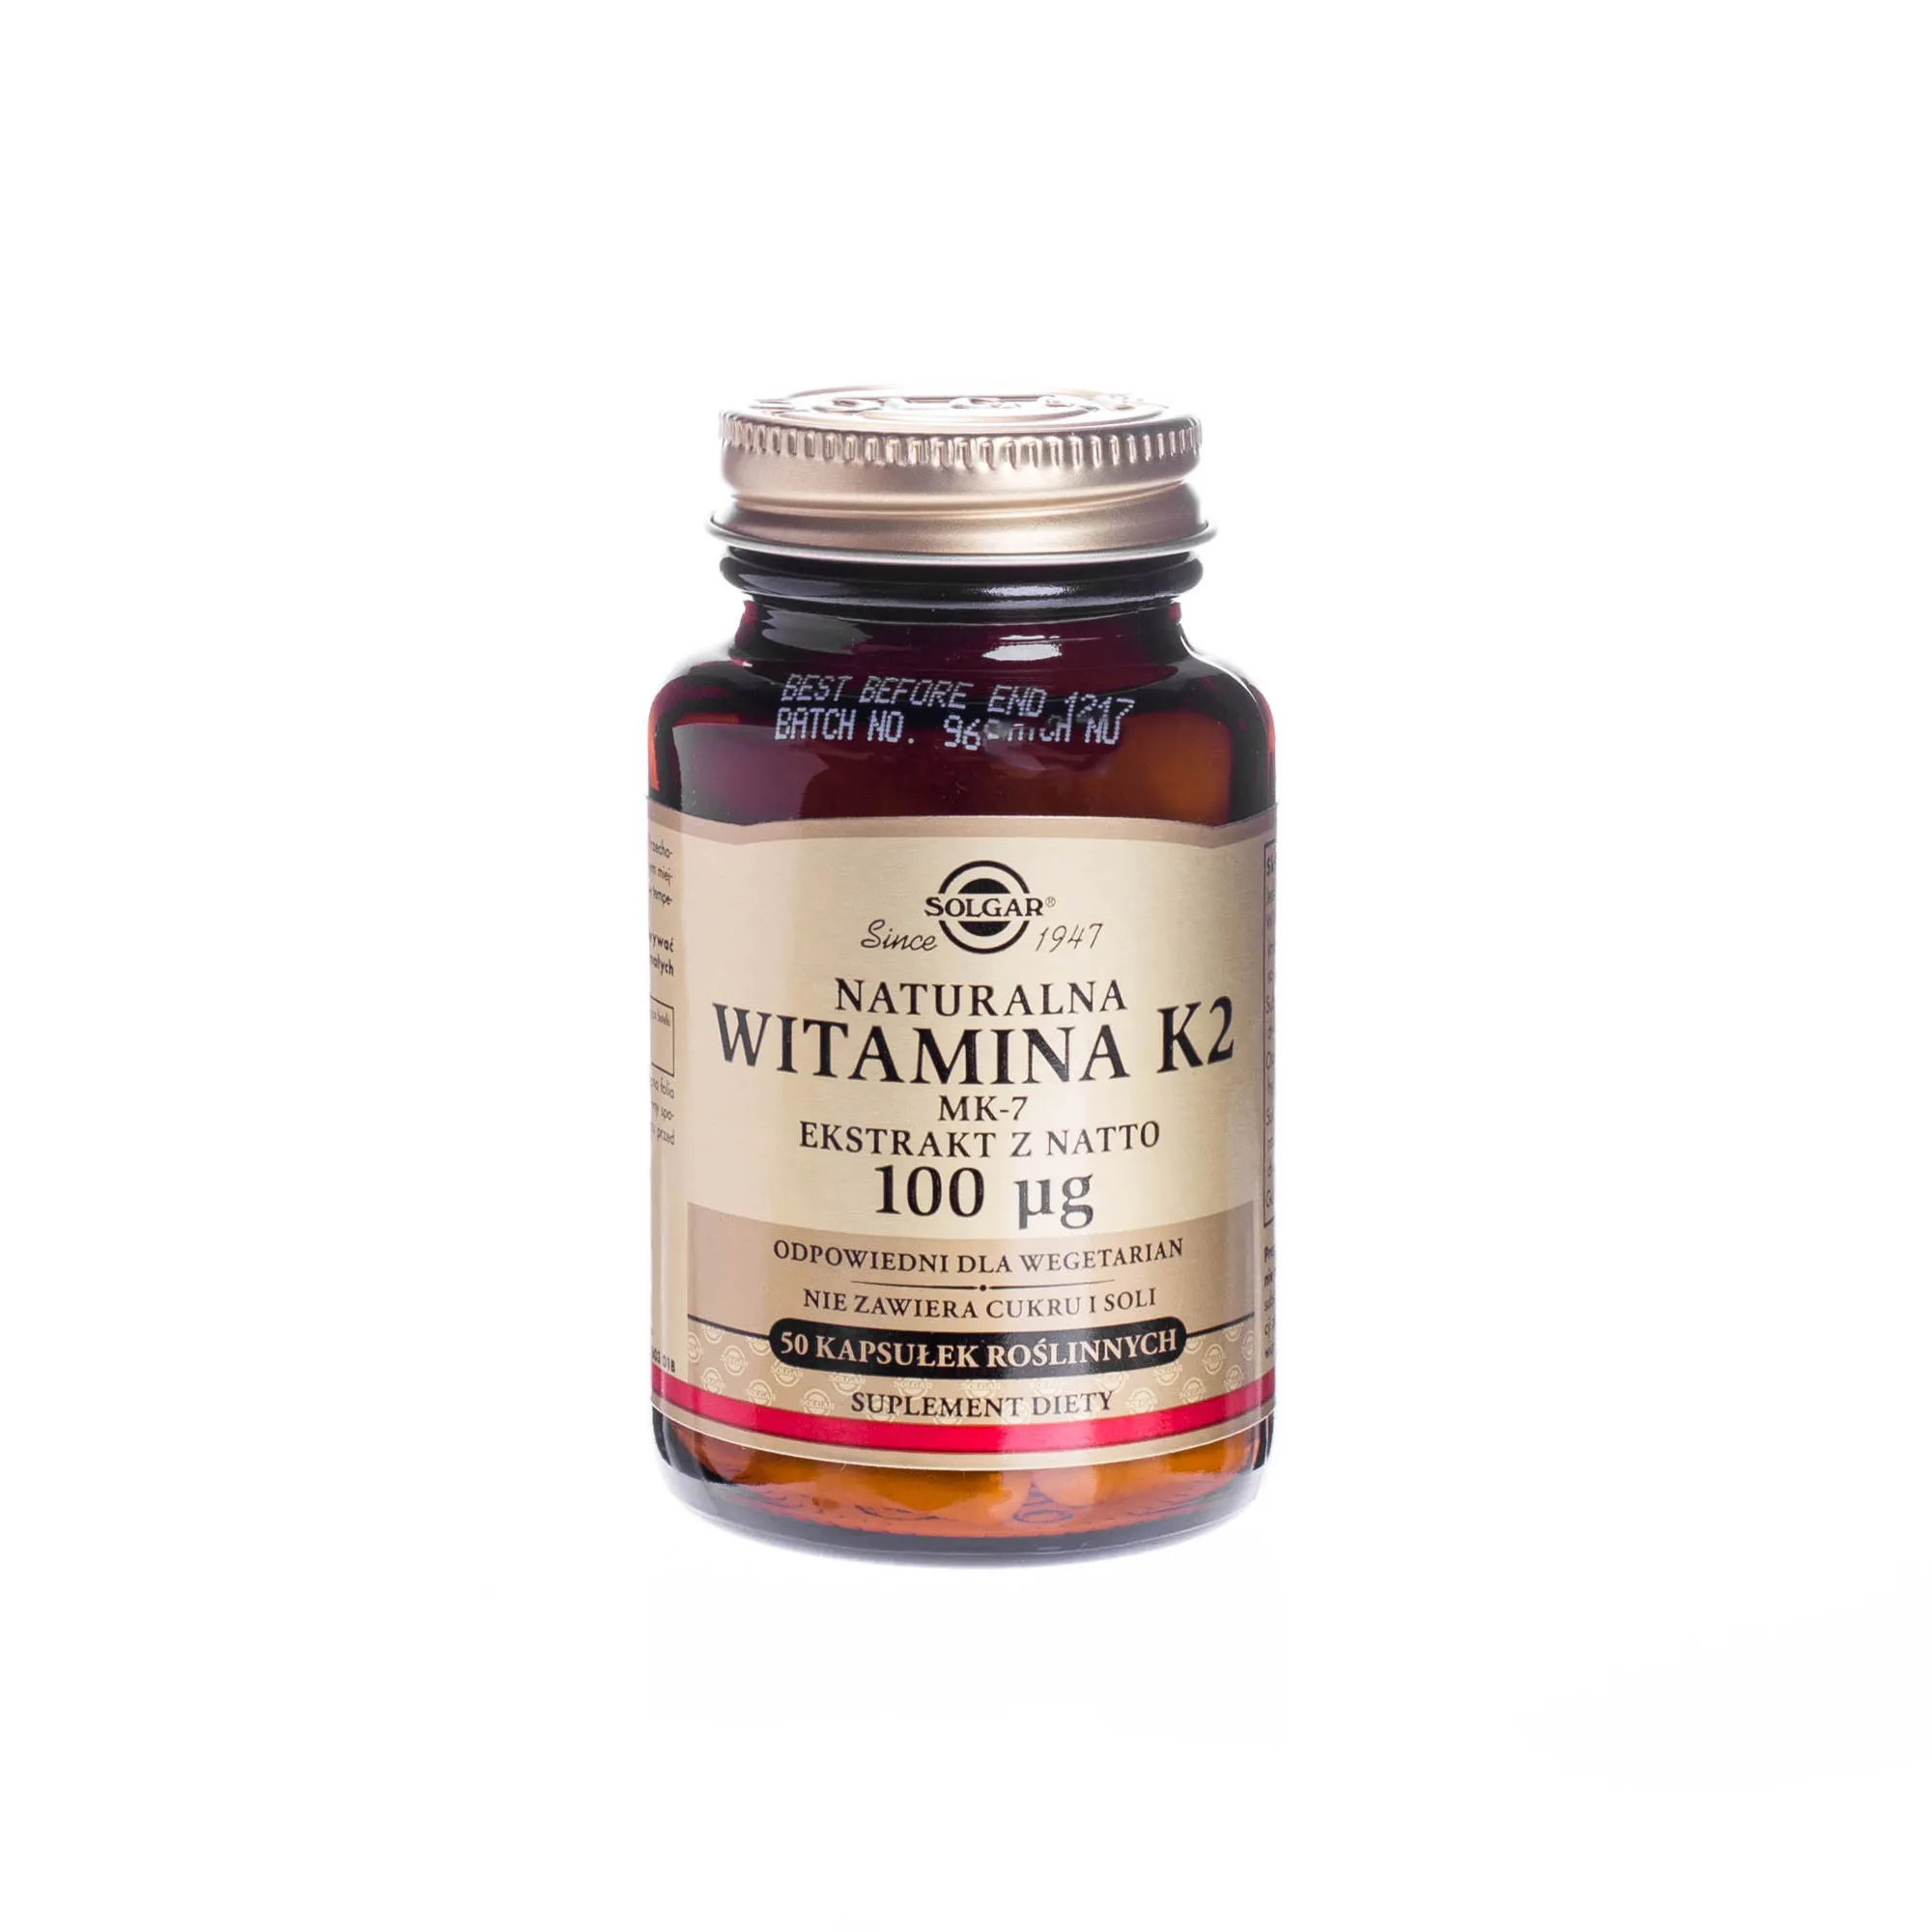 Solgar Naturalna Witamina K2, ekstrakt z natto 100 µg, suplement diety, 50 kapsułek roślinnych. Data ważności 31.05.2024